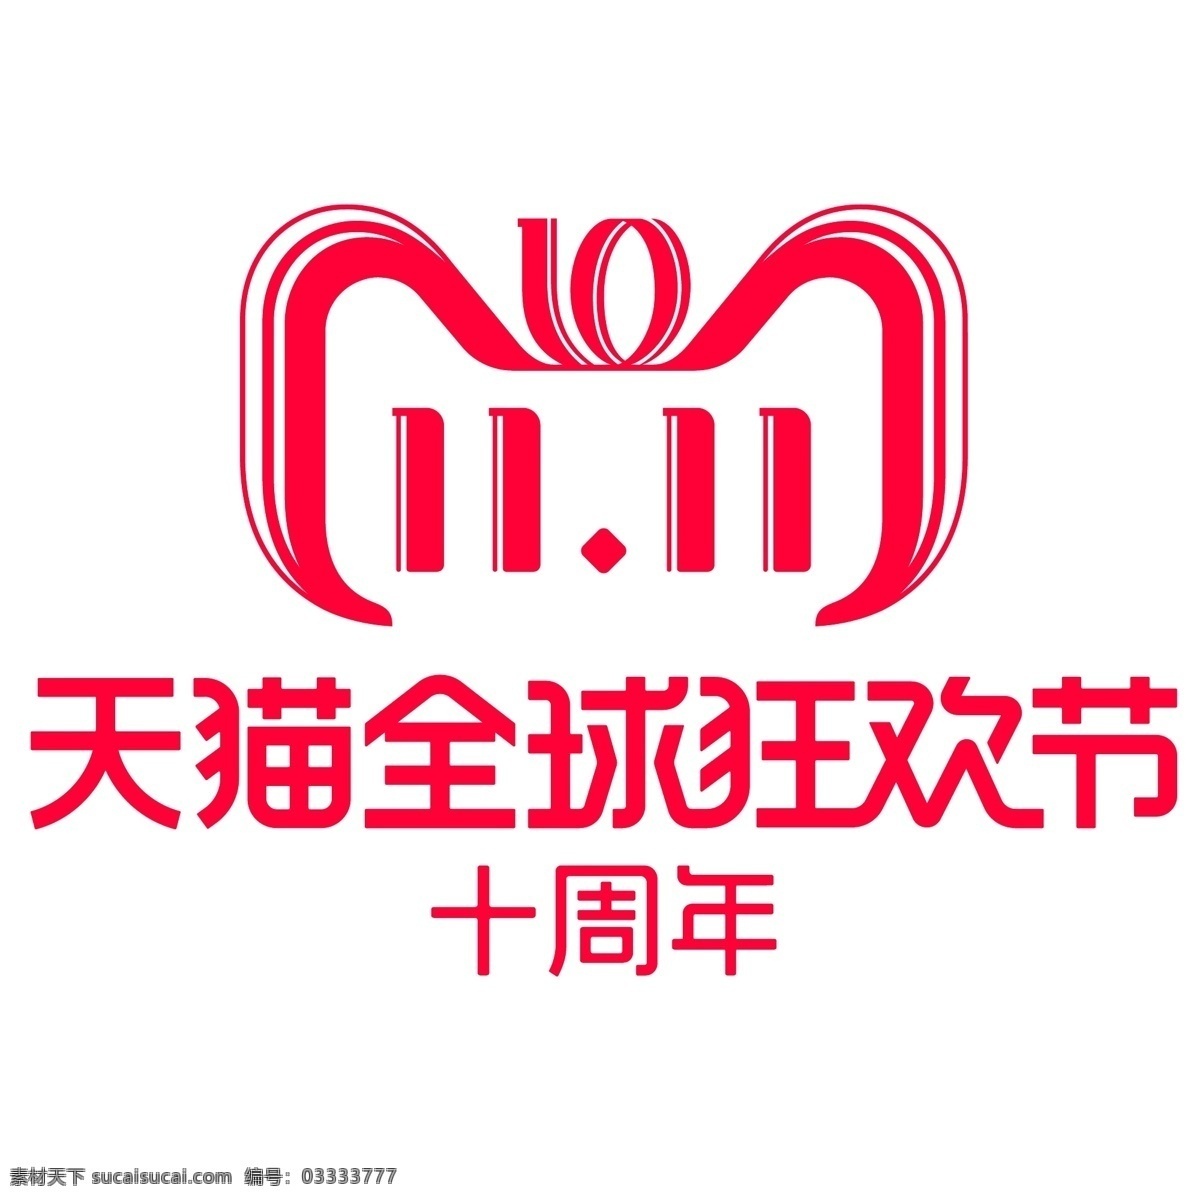 红色 创意 双 天猫 logo 全球狂欢节 节日 促销 电商 优惠 打折 双十一